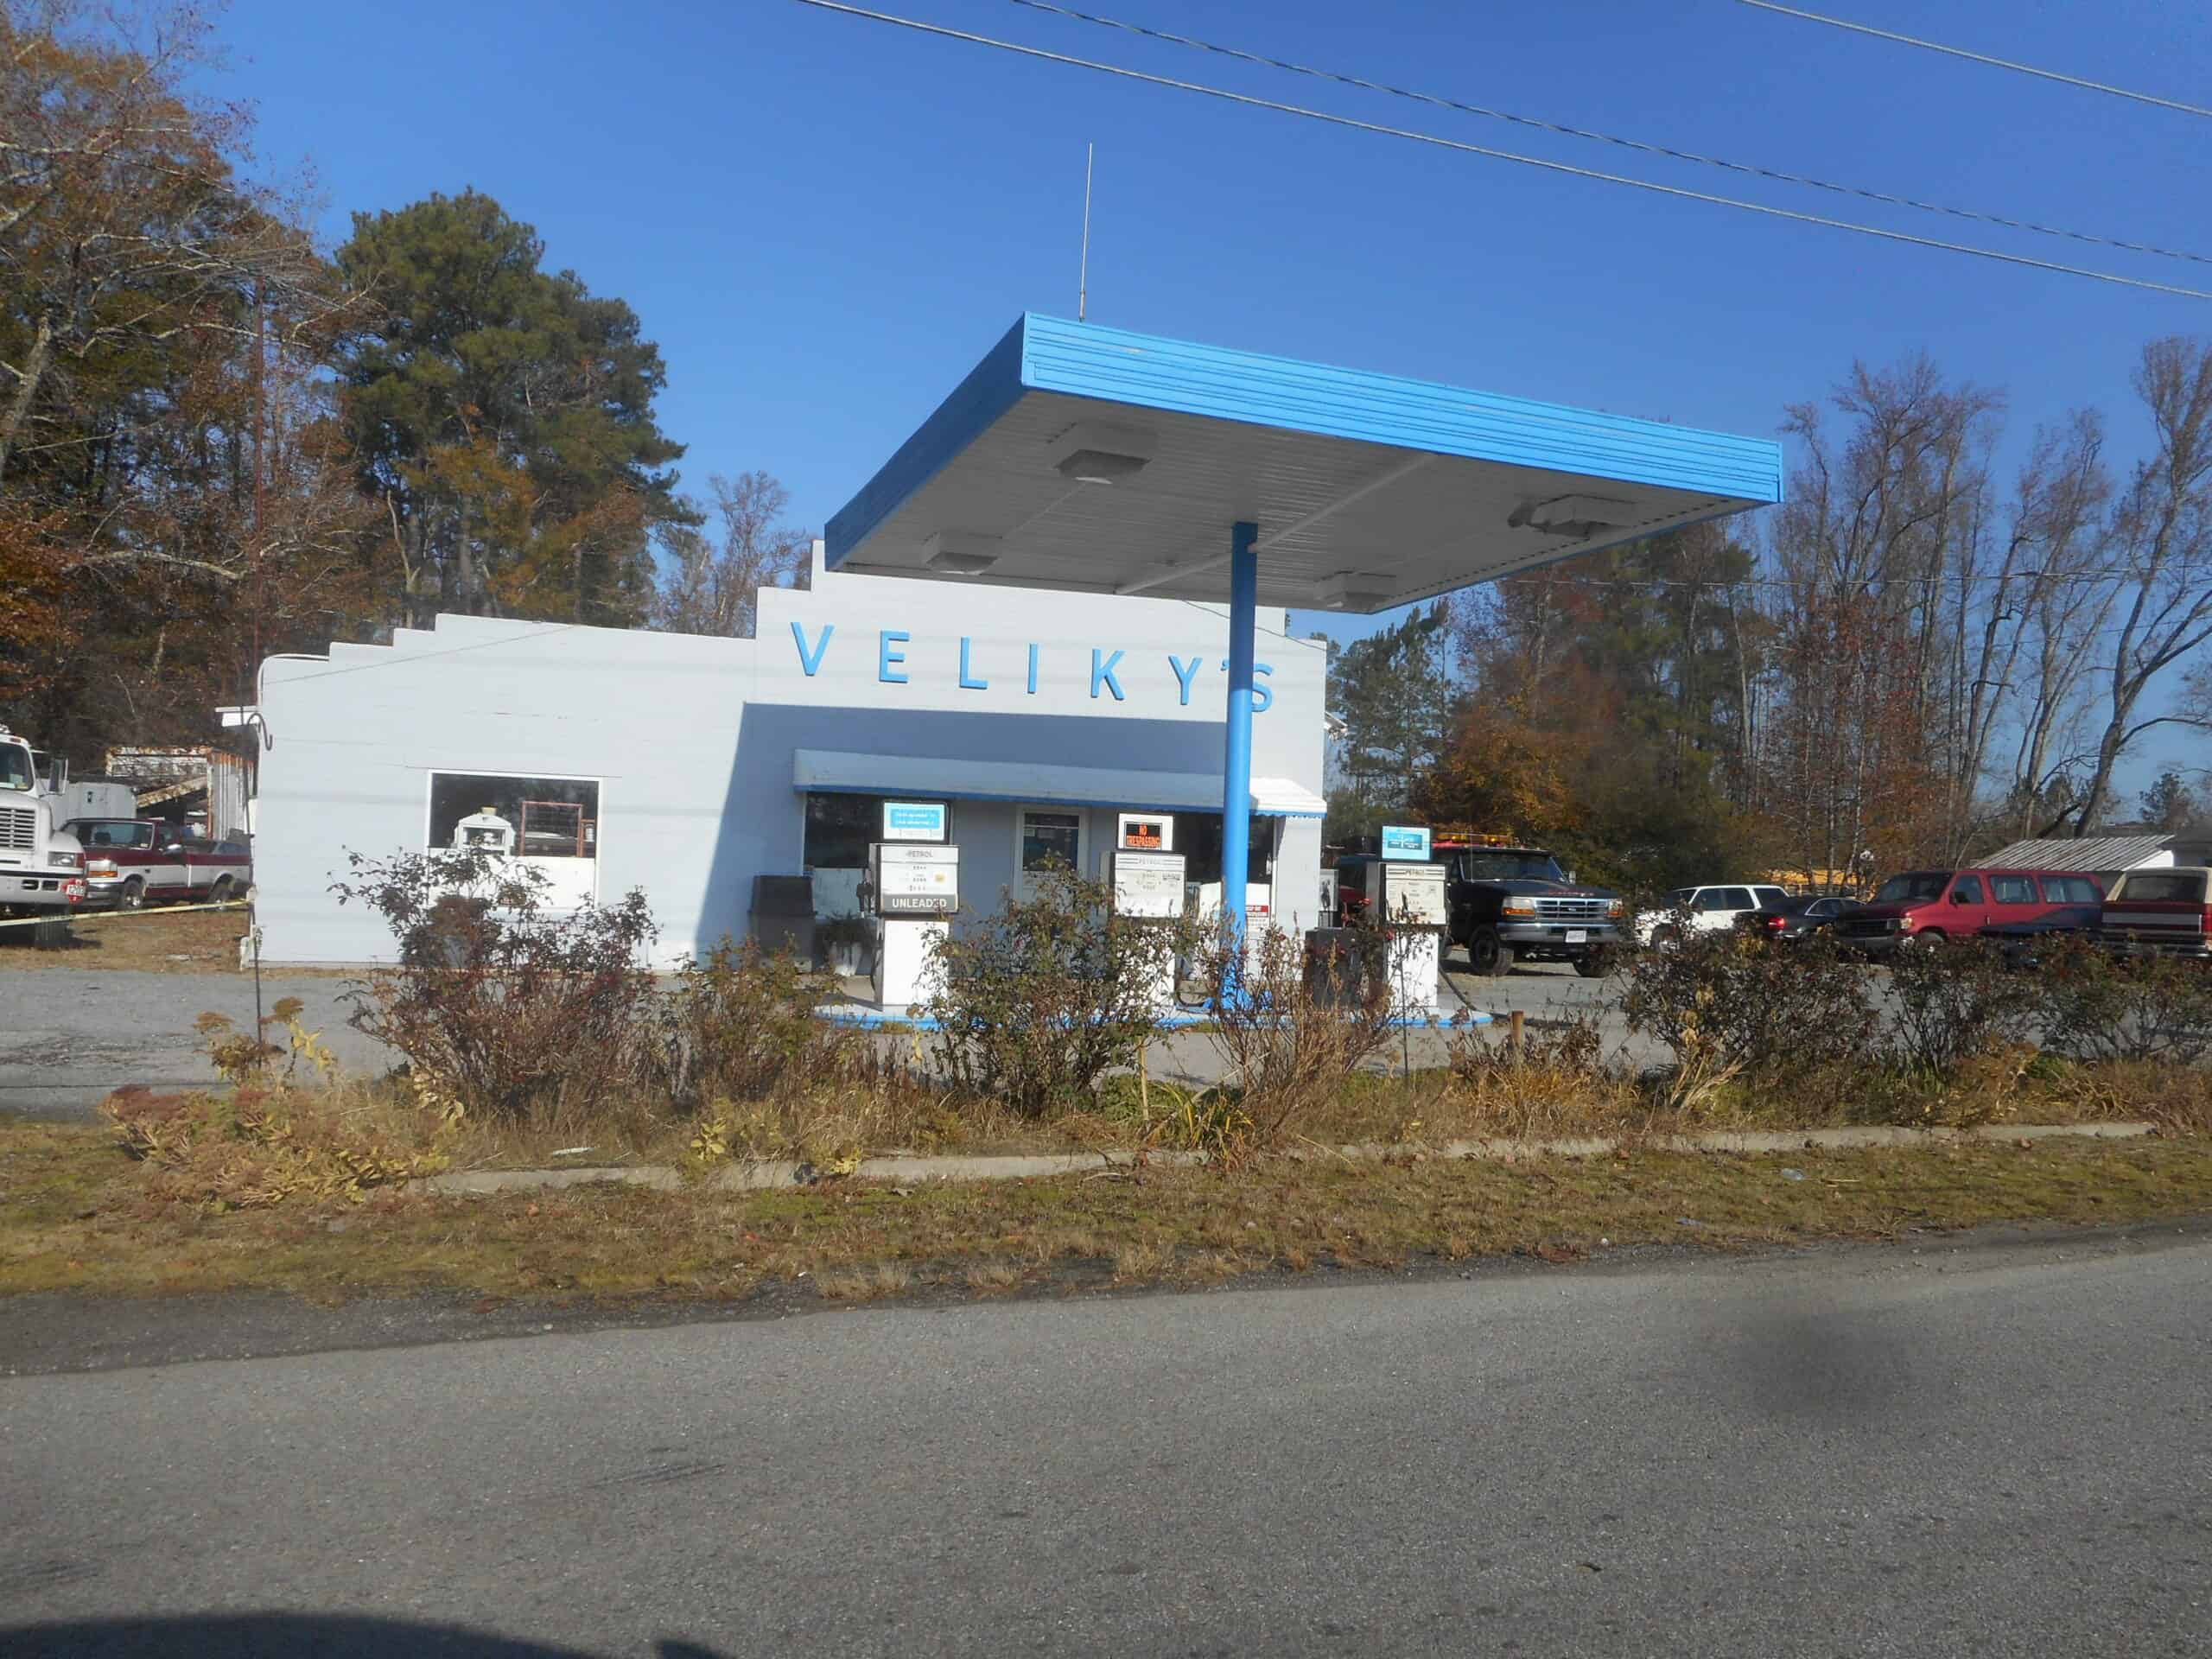 Veliky's Gas Station; VSR 610, Jarratt, VA-1 by DanTD